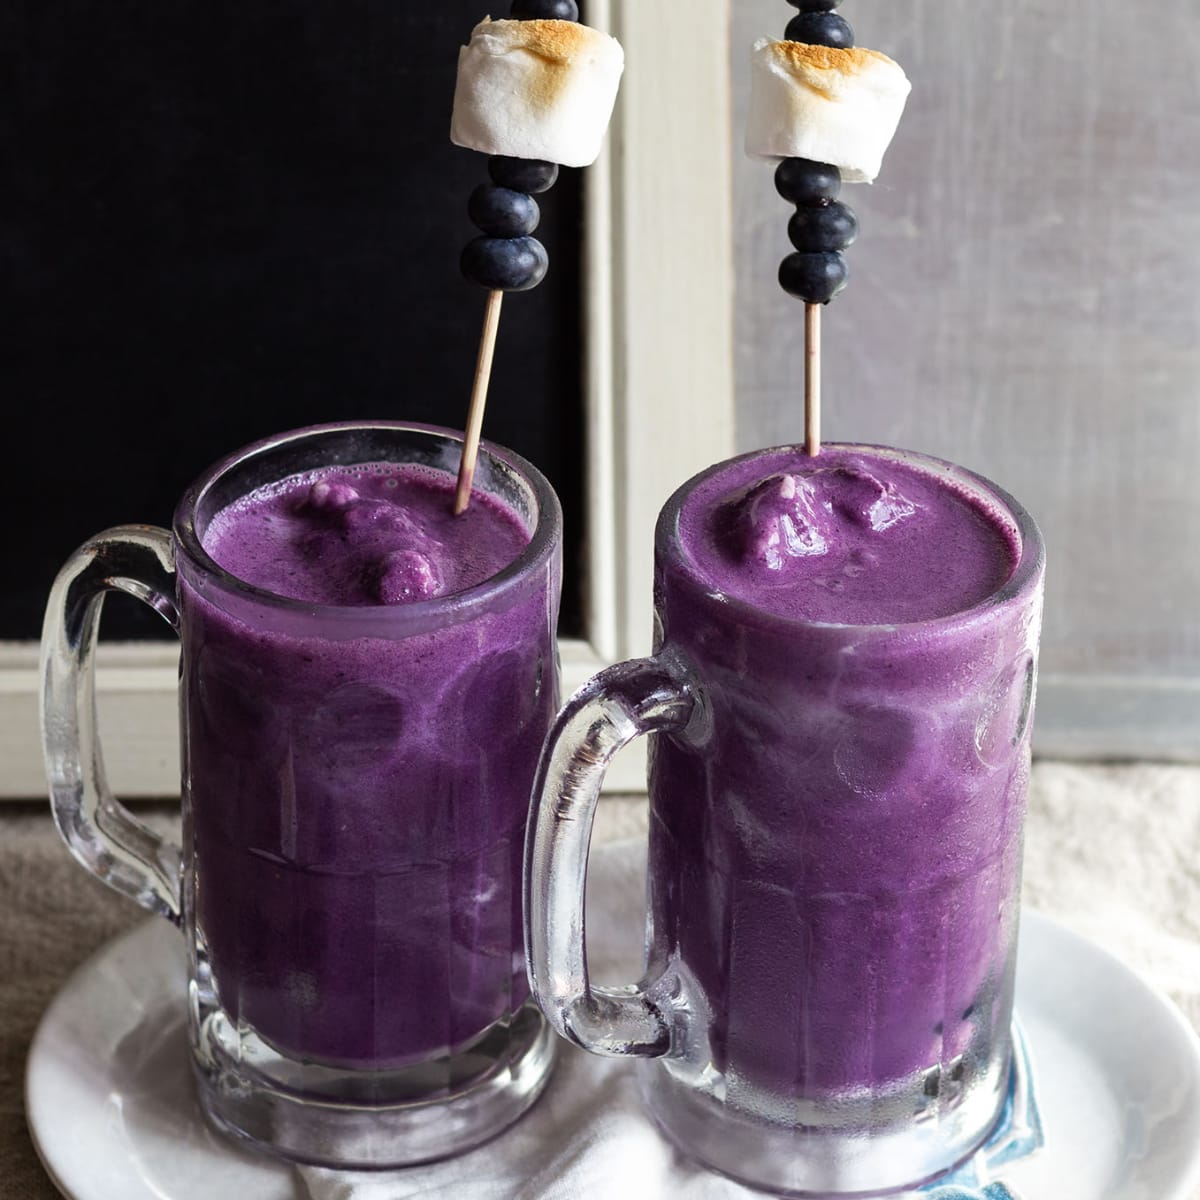 Blueberry milkshakes in glasses with skewers